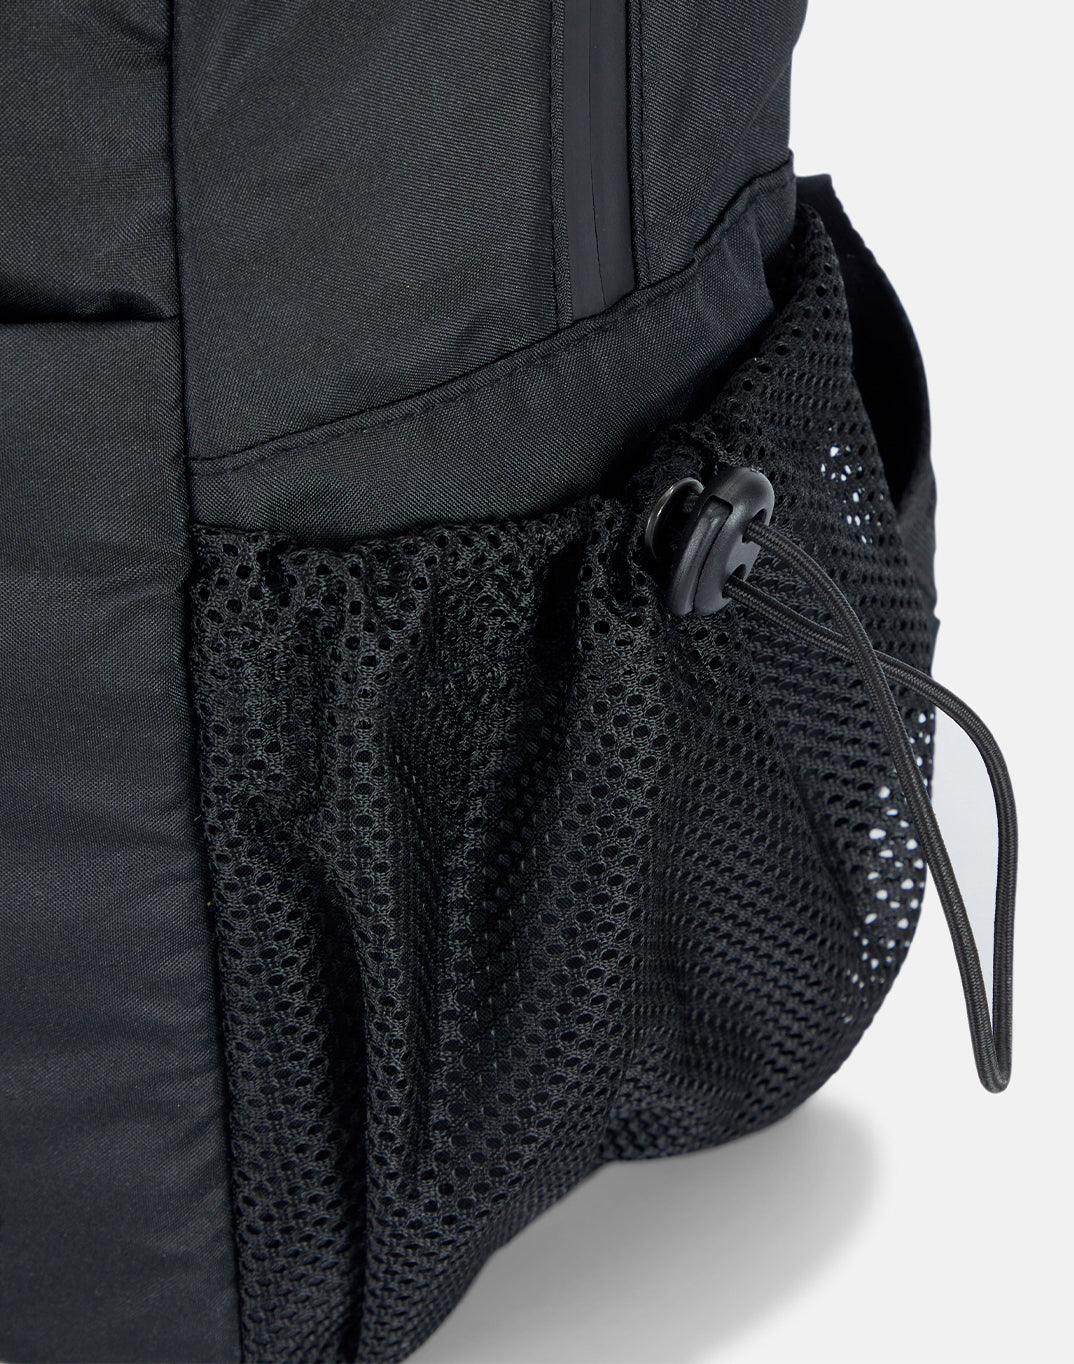 Eco Essentials Backpack in Black - Bags - Windsorbauders IE